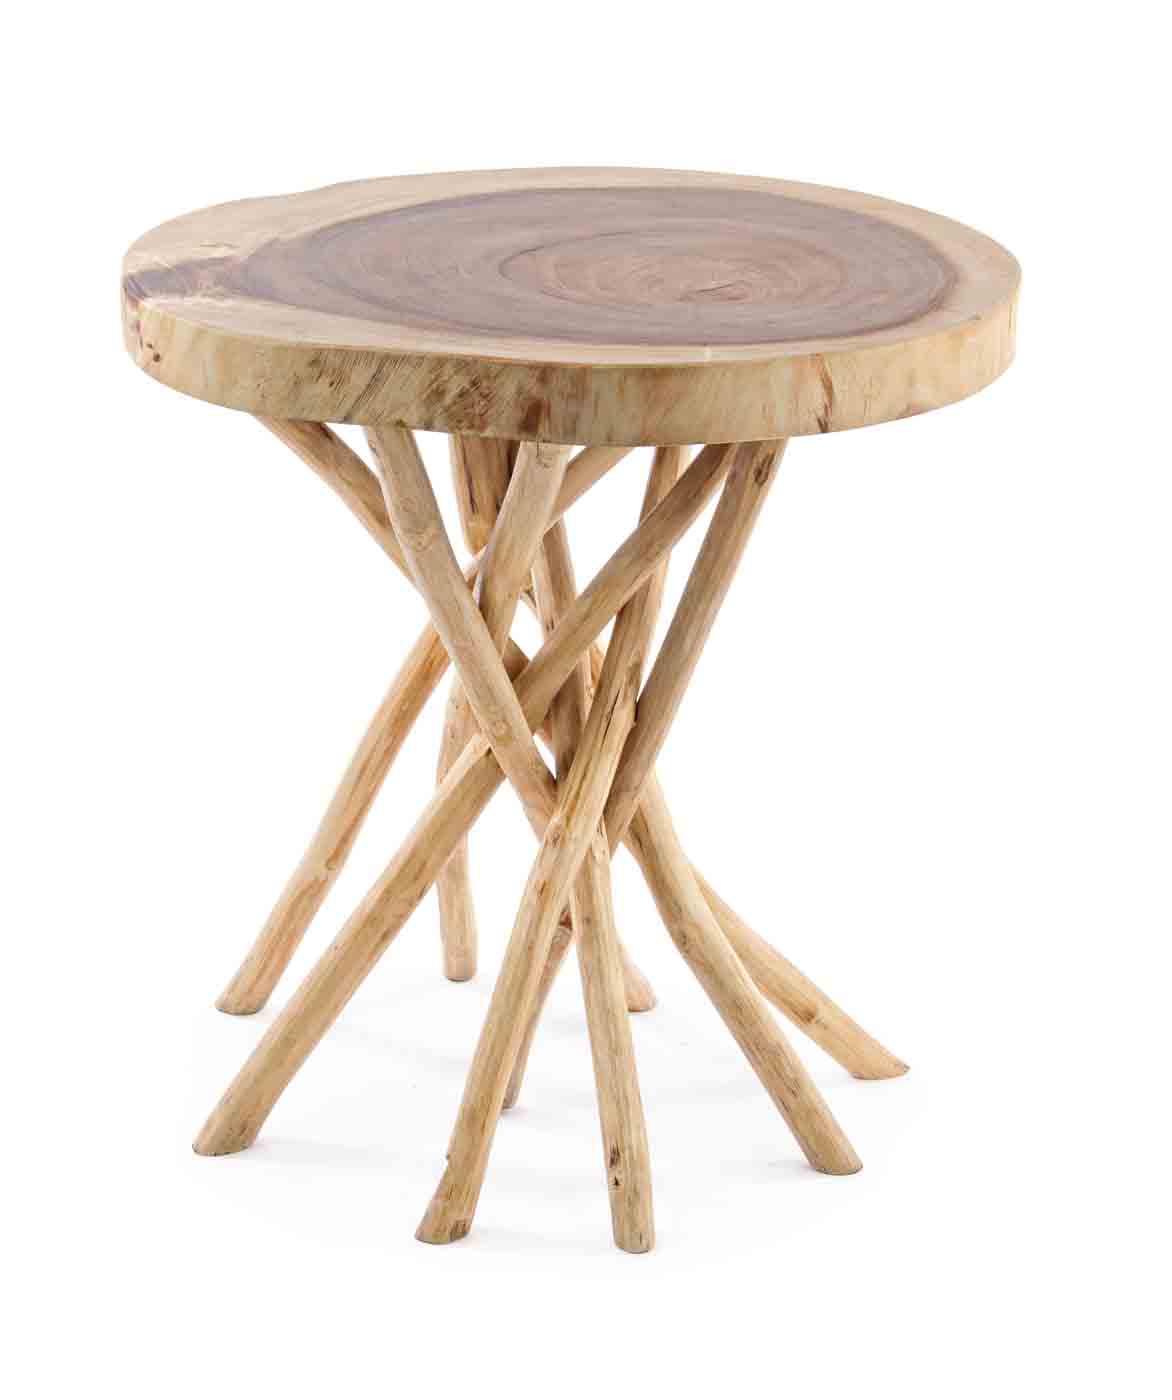 Die Tischplatte des Couchtisches Solidad wurde aus Mungur-Holz gefertigt, dadurch wird jedes Stück zu einem Unikat. Die Beine wurde aus Teakholz hergestellt, welche dem Tisch sein eigenes Design verleihen.